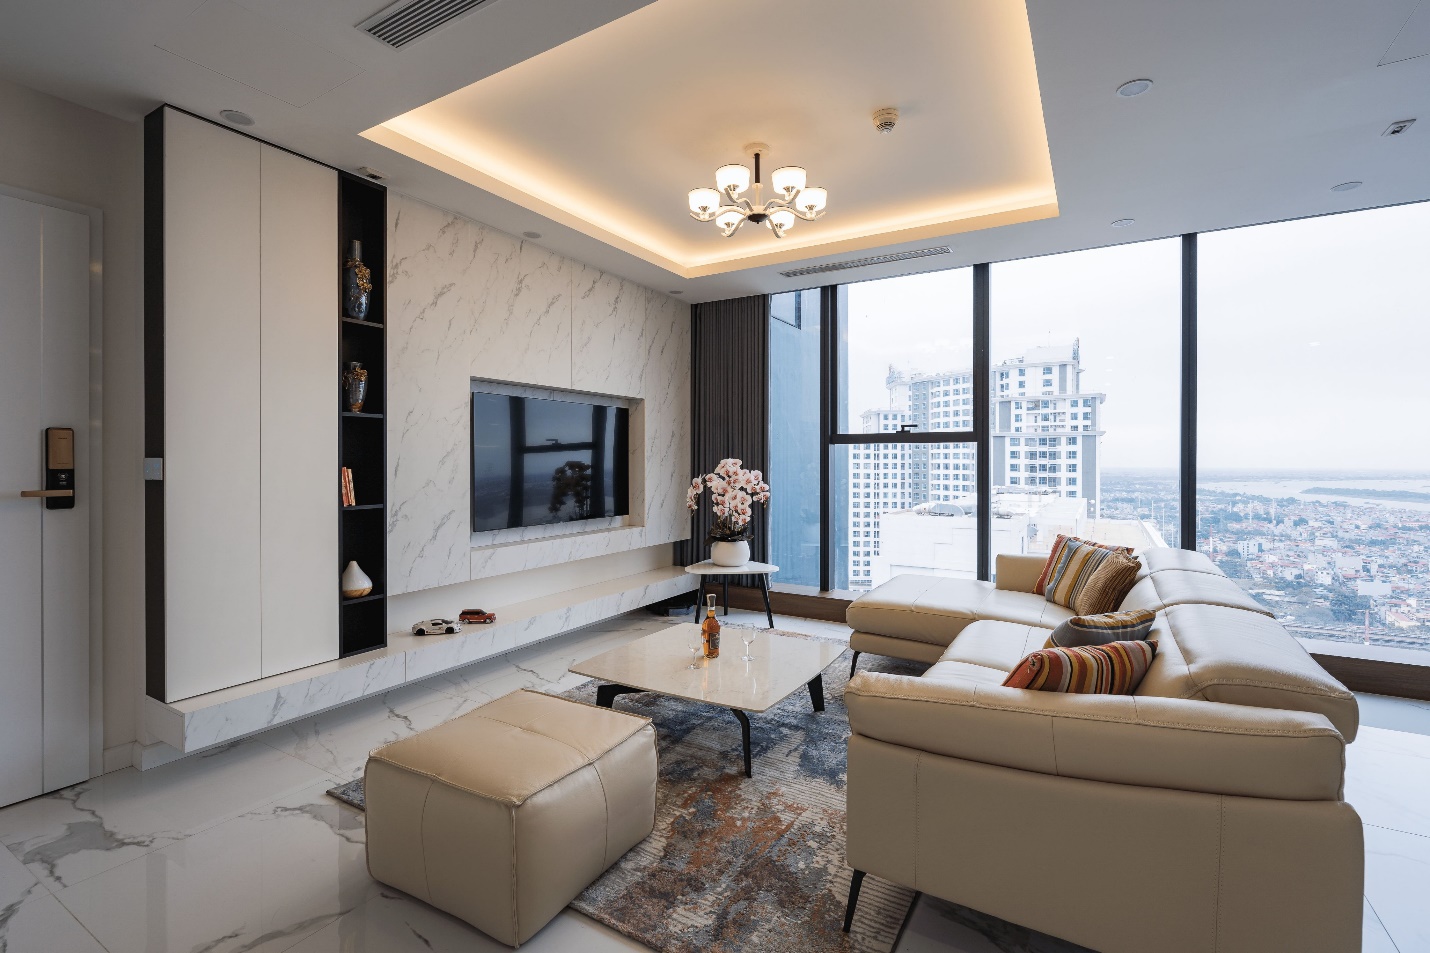 Khám phá căn hộ duplex sở hữu tầm view bao trọn sông Hồng trong khu nhà giàu bậc nhất Hà Nội - Ảnh 1.